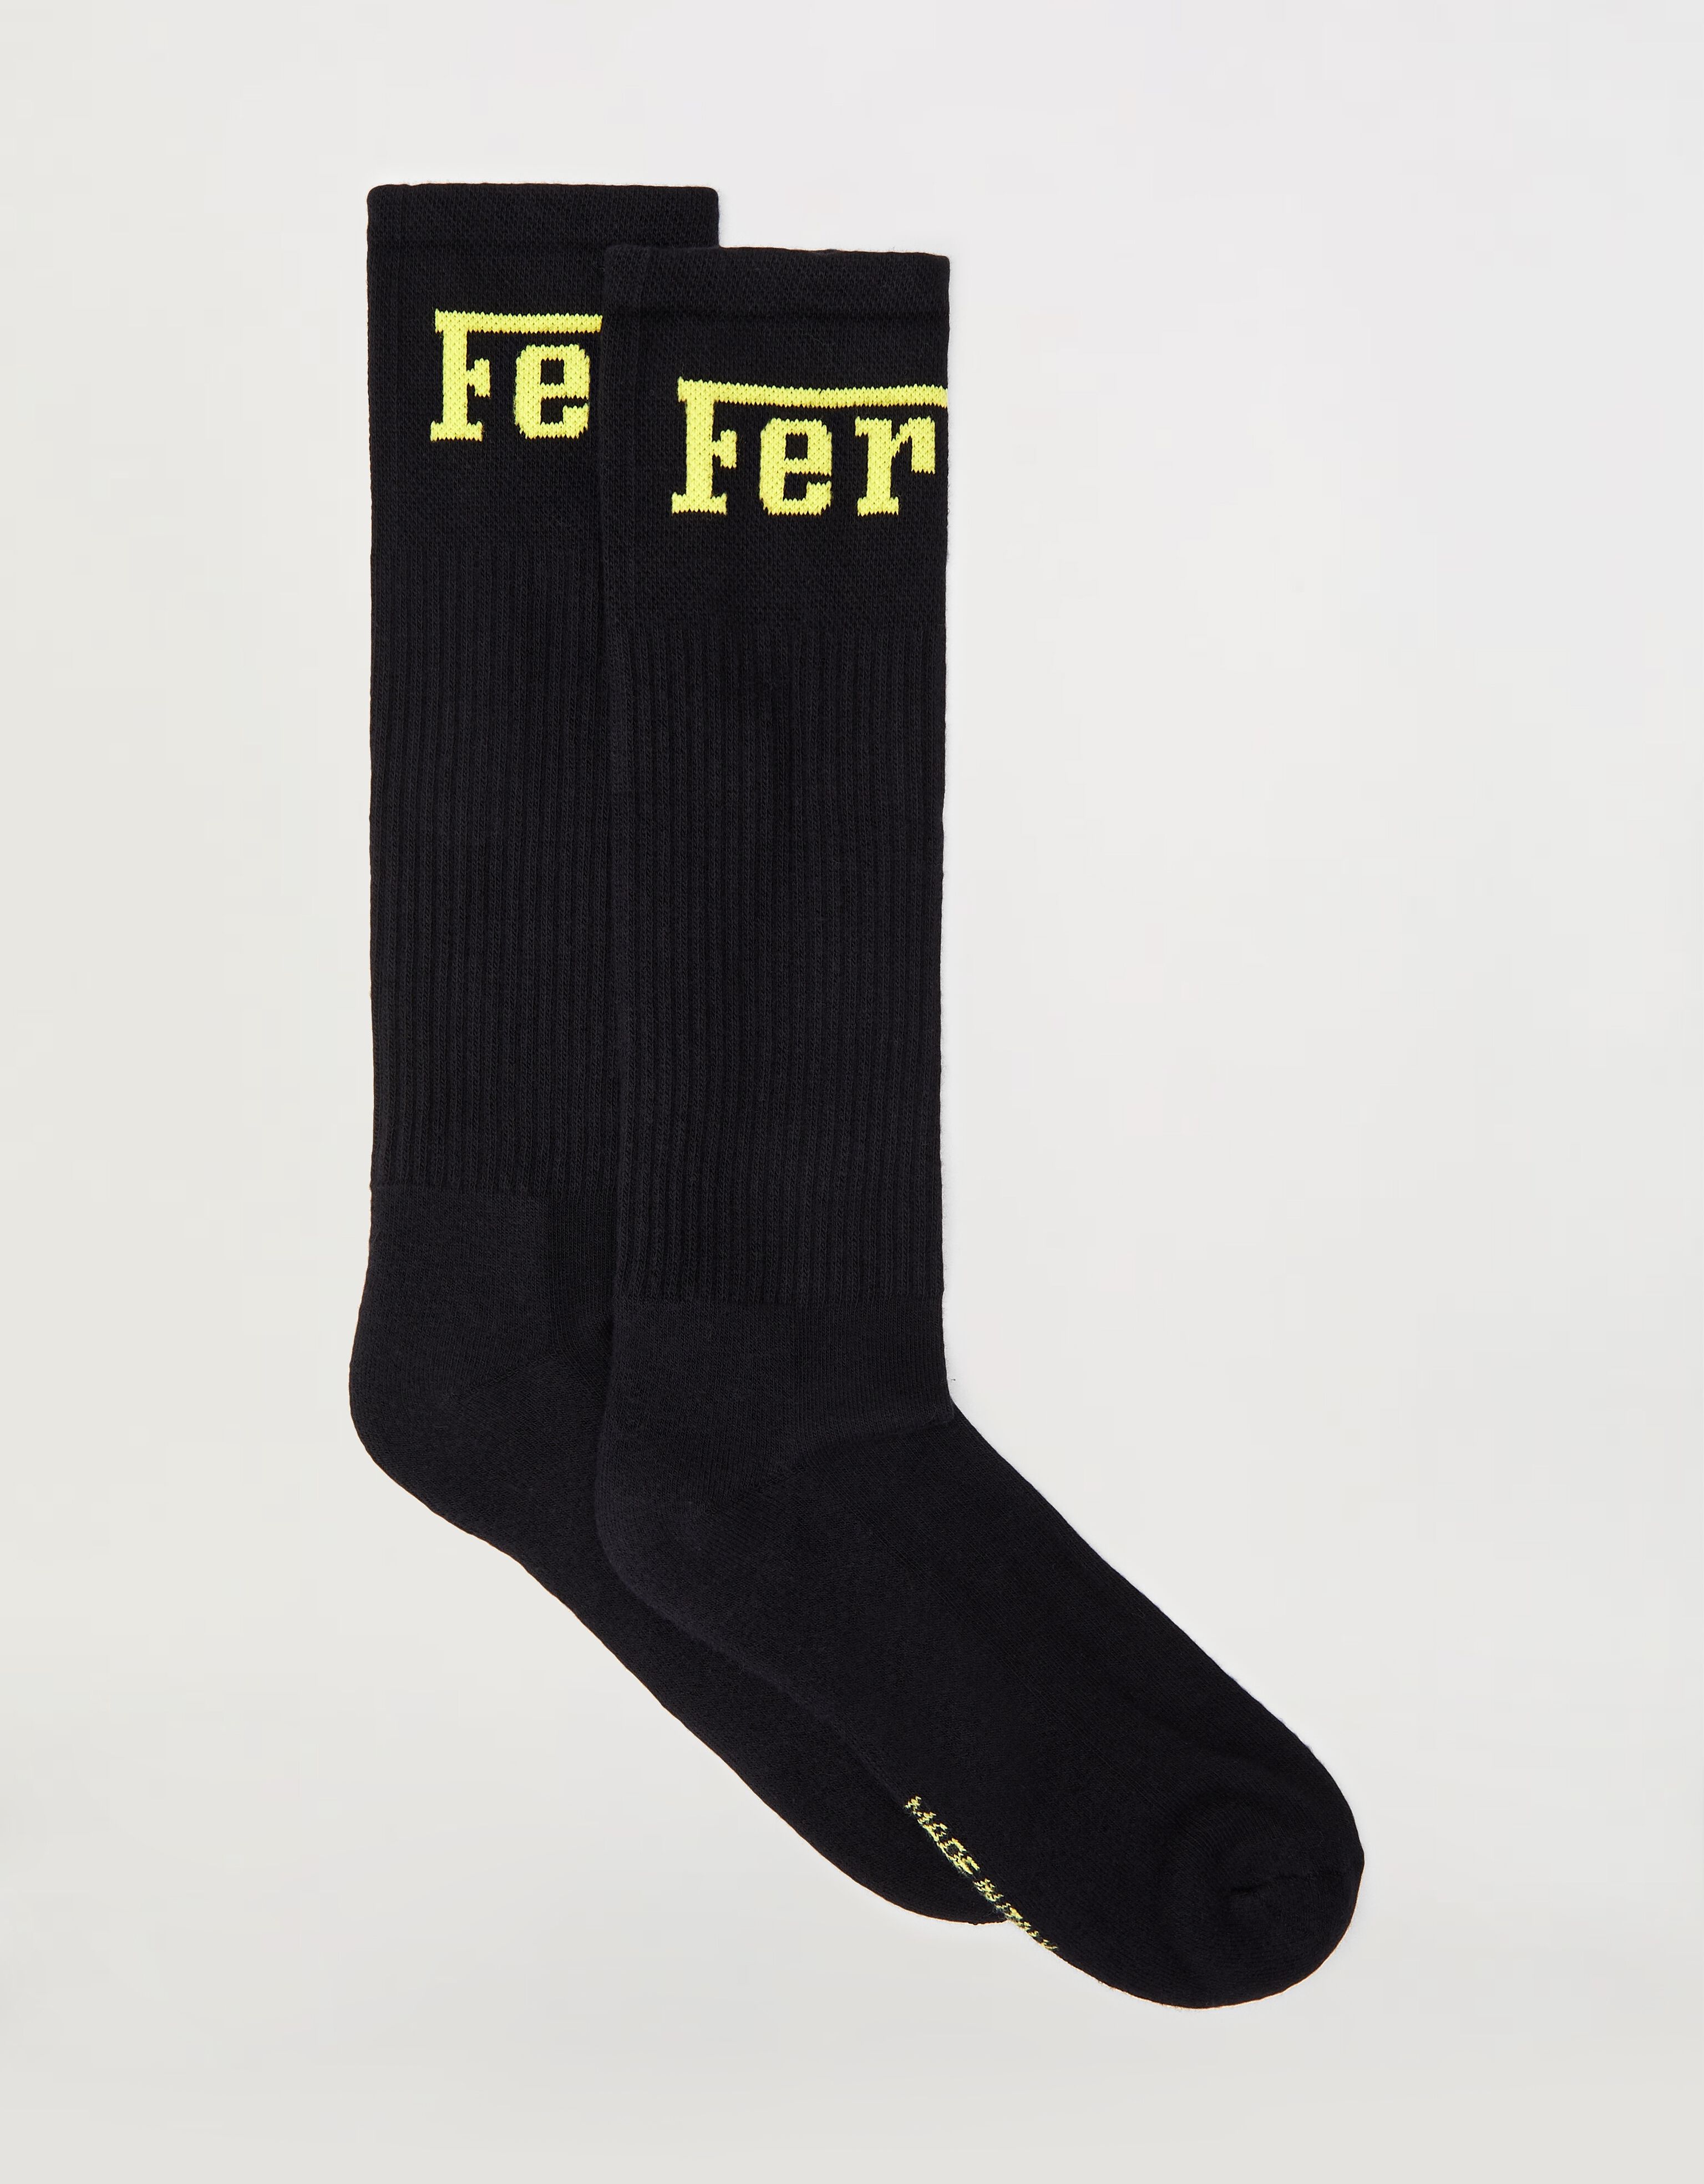 Ferrari Socken aus Baumwollmischung mit Ferrari-Logo Gelb 20007f